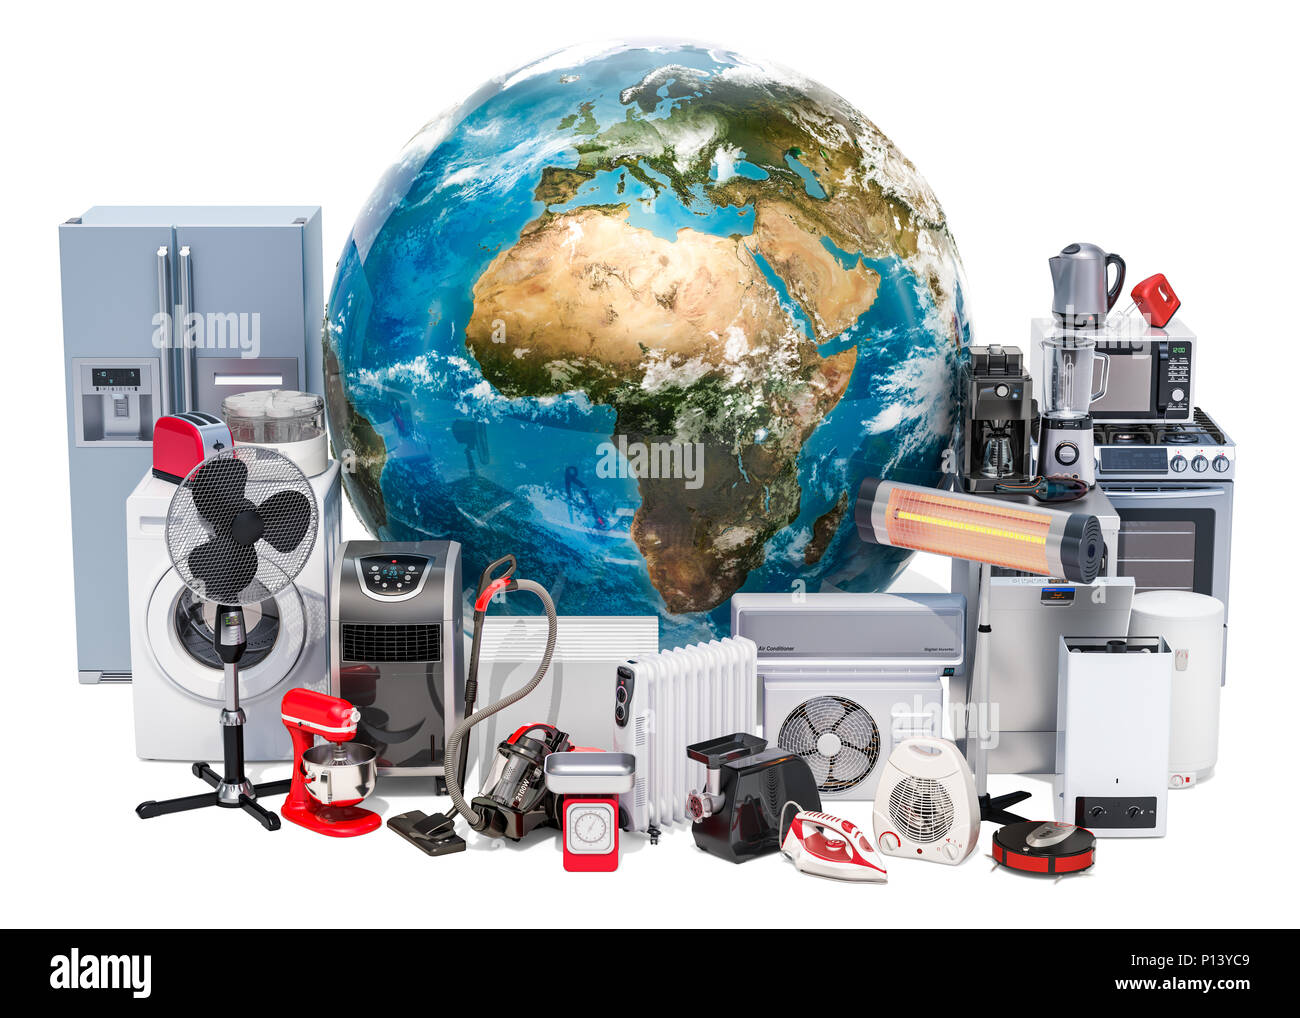 Ensemble de cuisine et appareils ménagers autour du Globe de la Terre. Concept commercial mondial, 3D Rendering Banque D'Images